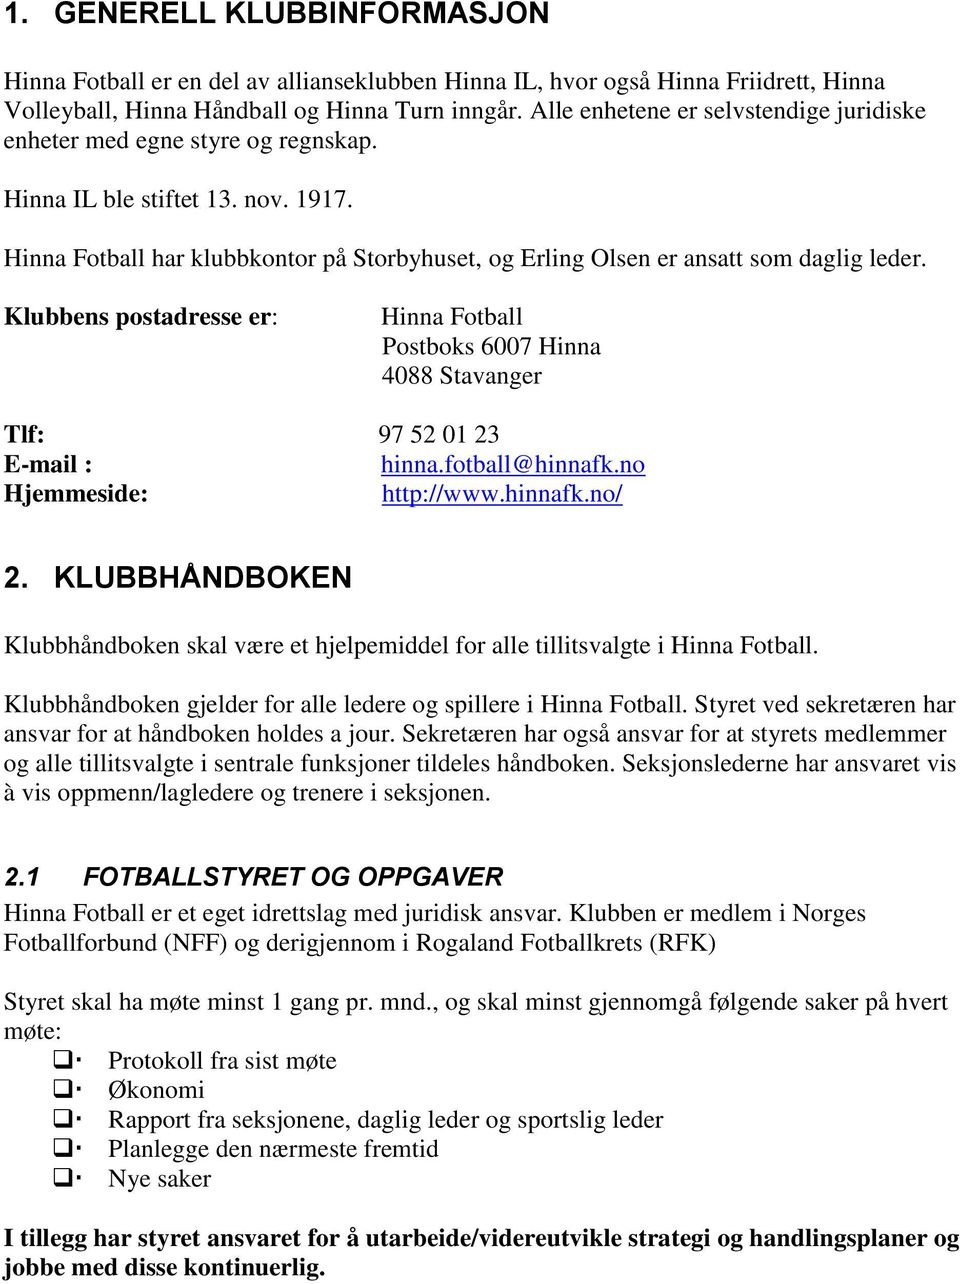 Hinna Fotball har klubbkontor på Storbyhuset, og Erling Olsen er ansatt som daglig leder. Klubbens postadresse er: Hinna Fotball Postboks 6007 Hinna 4088 Stavanger Tlf: 97 52 01 23 E-mail : hinna.